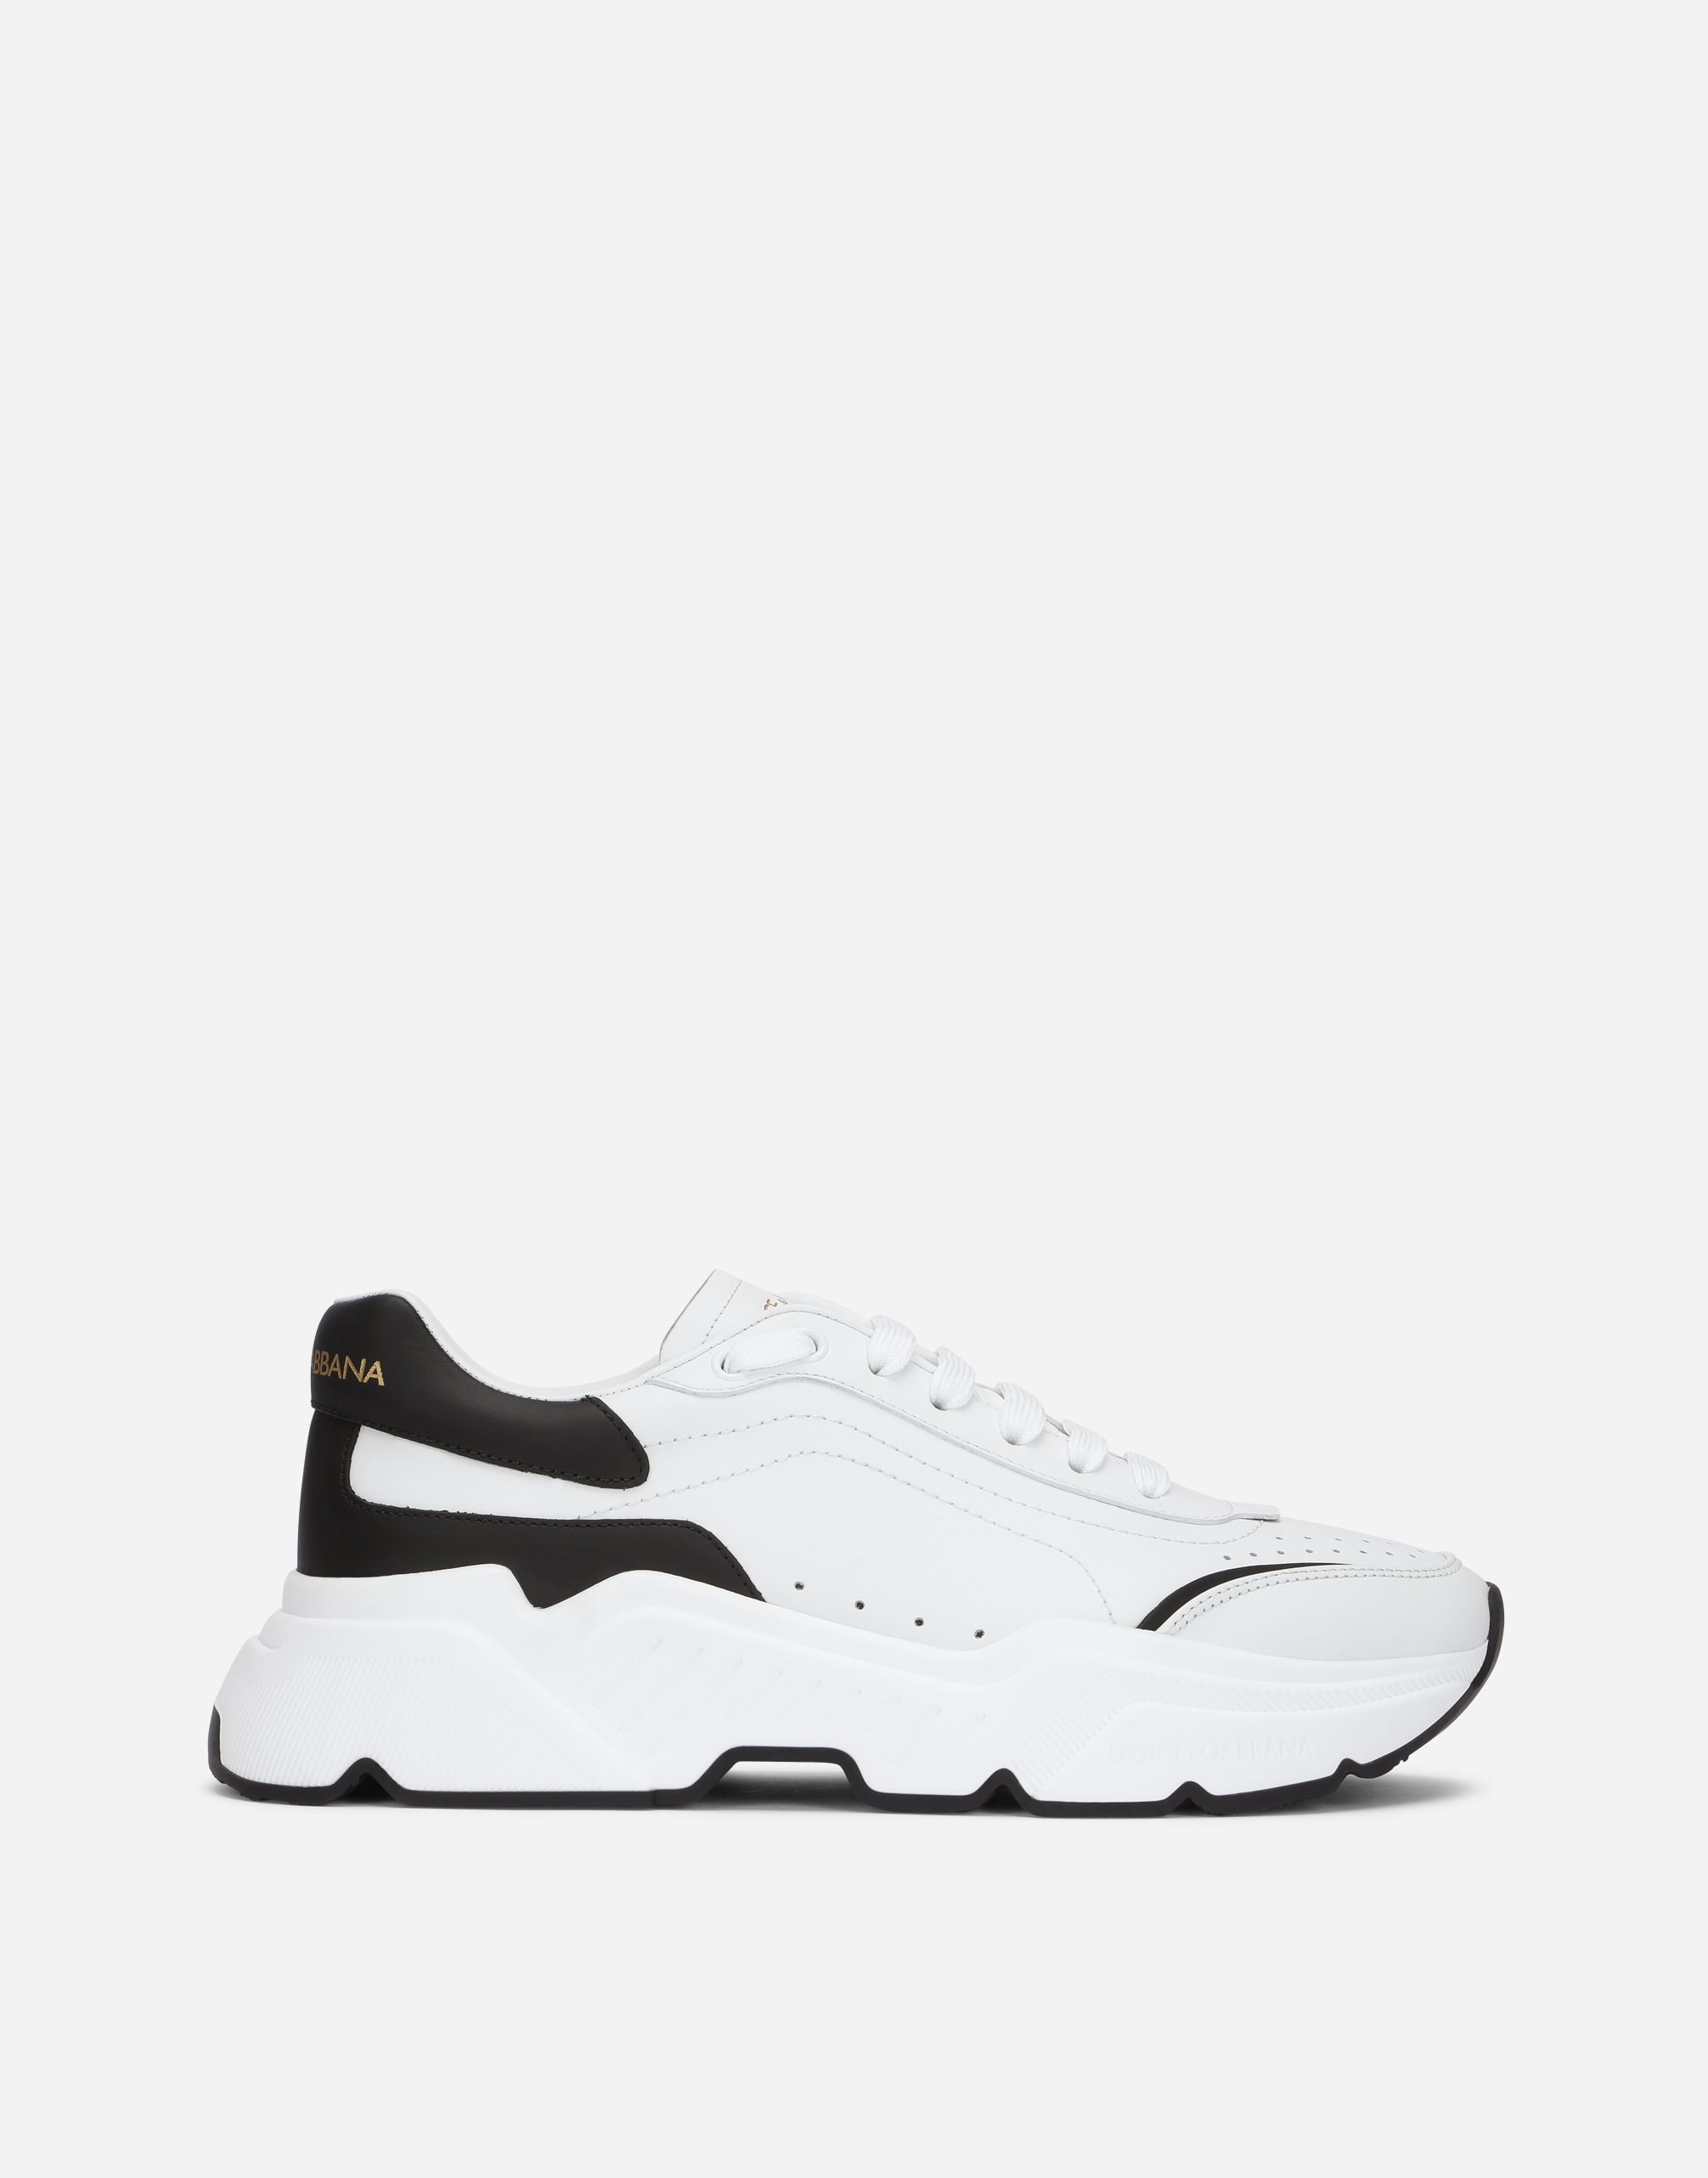 Daymaster sneakers in nappa calfskin in White/Black